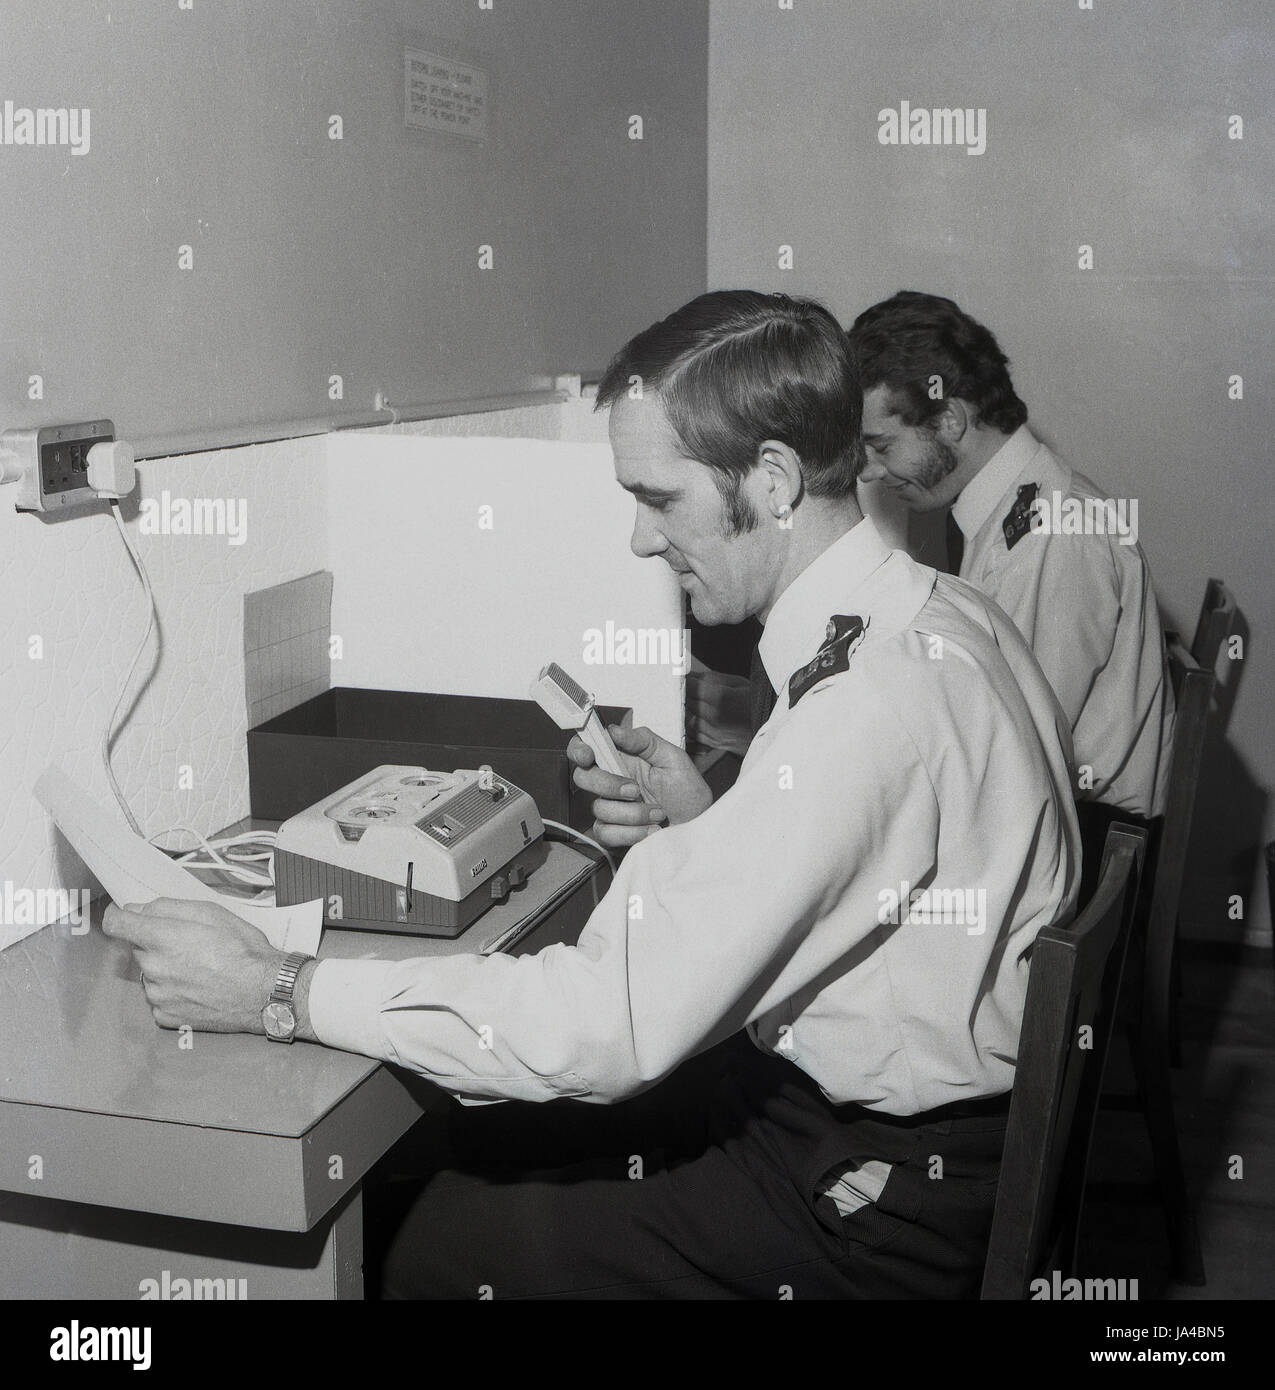 In den 1970er Jahren saßen zwei uniformierte Polizeibeamte an Ständen, die die neuen Diktafon- oder Tonaufzeichnungsmaschinen benutzten, die der Metropolitan Police Service in dieser Ära einführte, um die Aussagen eines Verdächtigen oder Kriminalberichte zu erstatten. Stockfoto